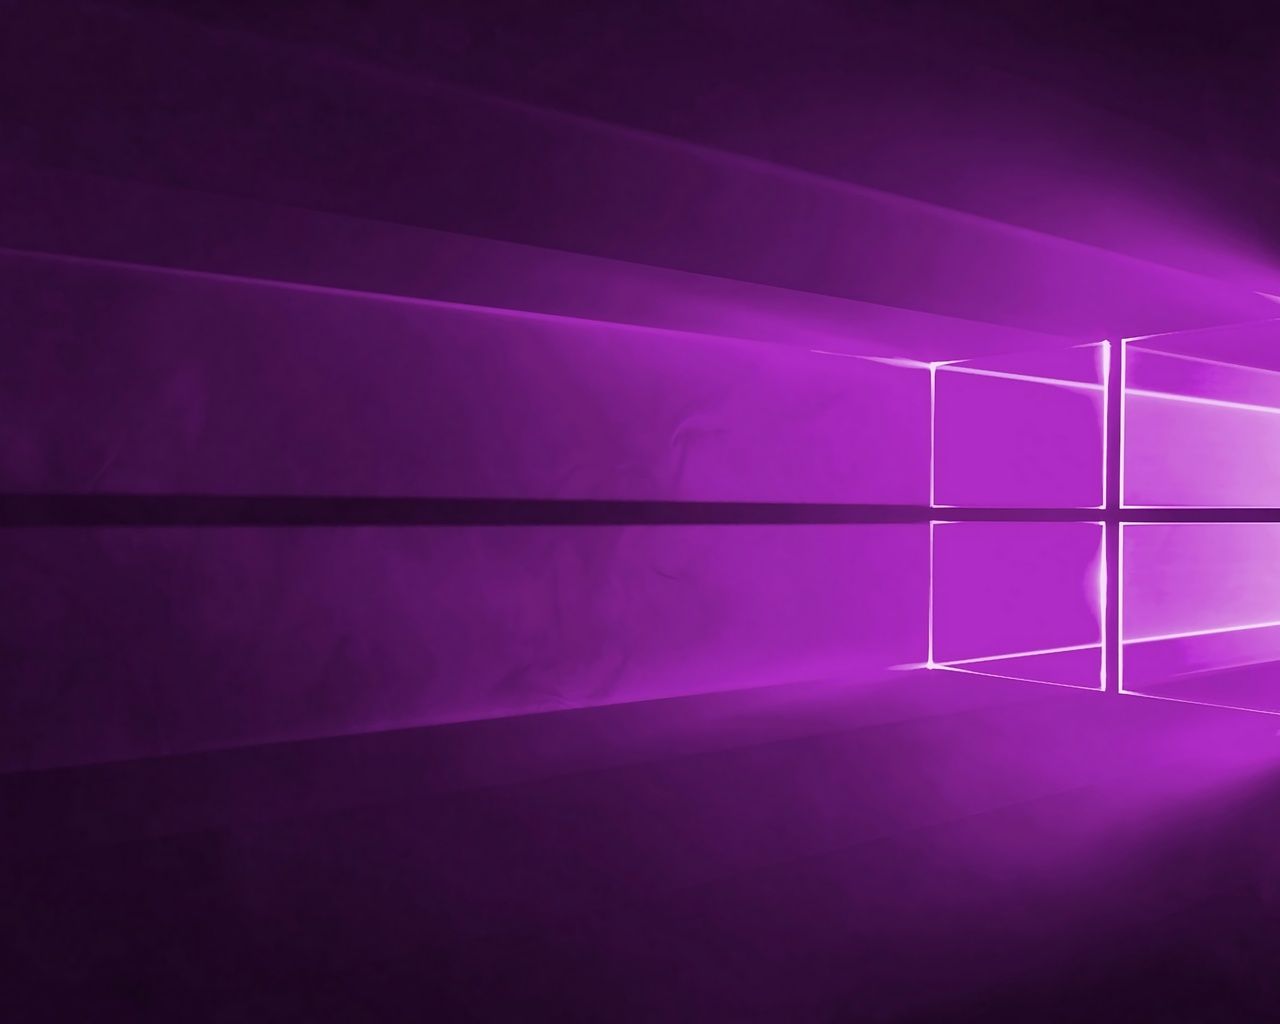 Windows 10 4K Purple Wallpapers